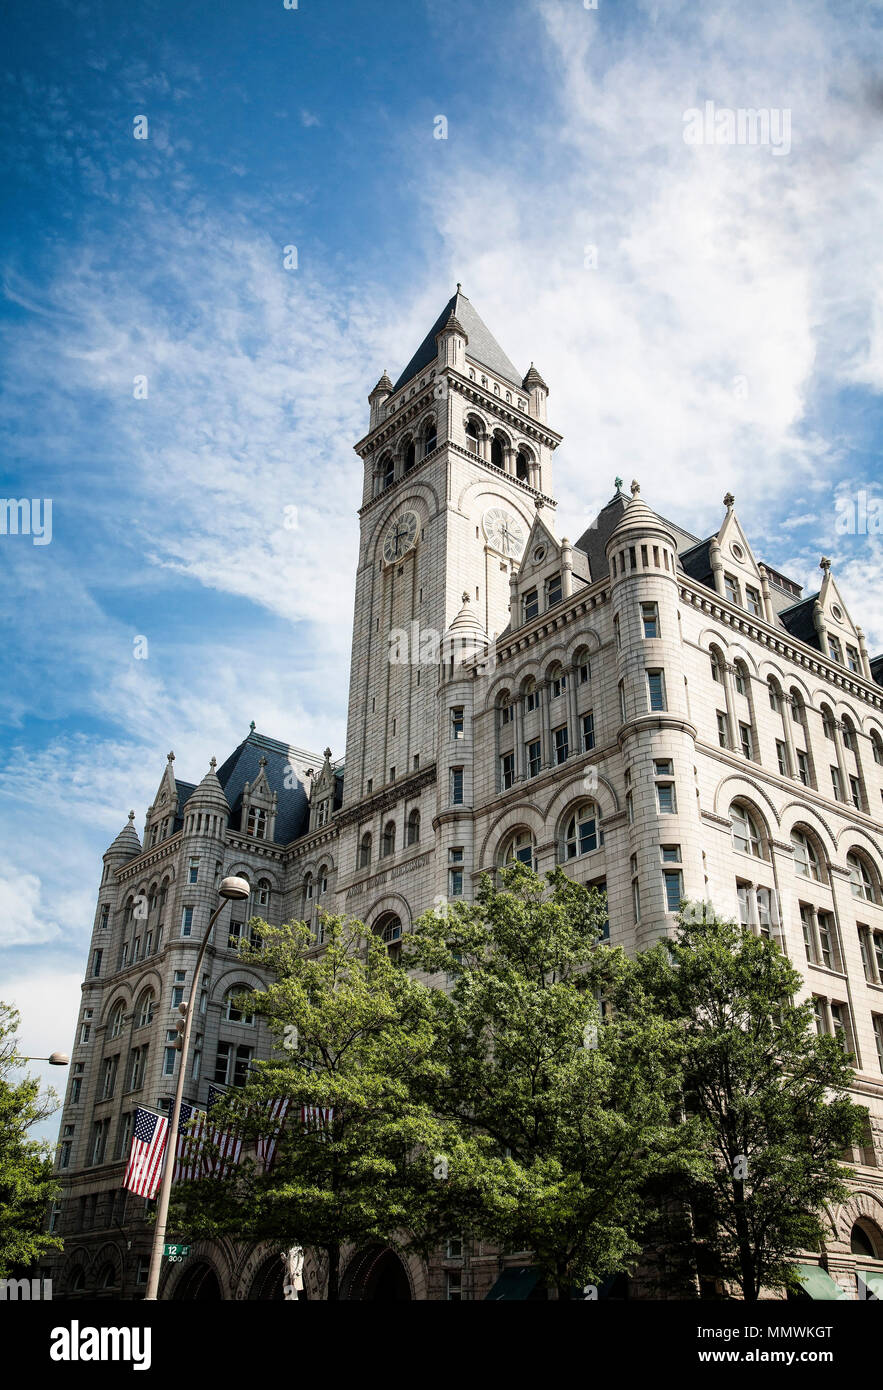 Historique La tour de bureaux de poste de Washington DC au 1100 Pennsylvania Avenue réaménagée en un luxueux hôtel Trump International en 2016. Banque D'Images